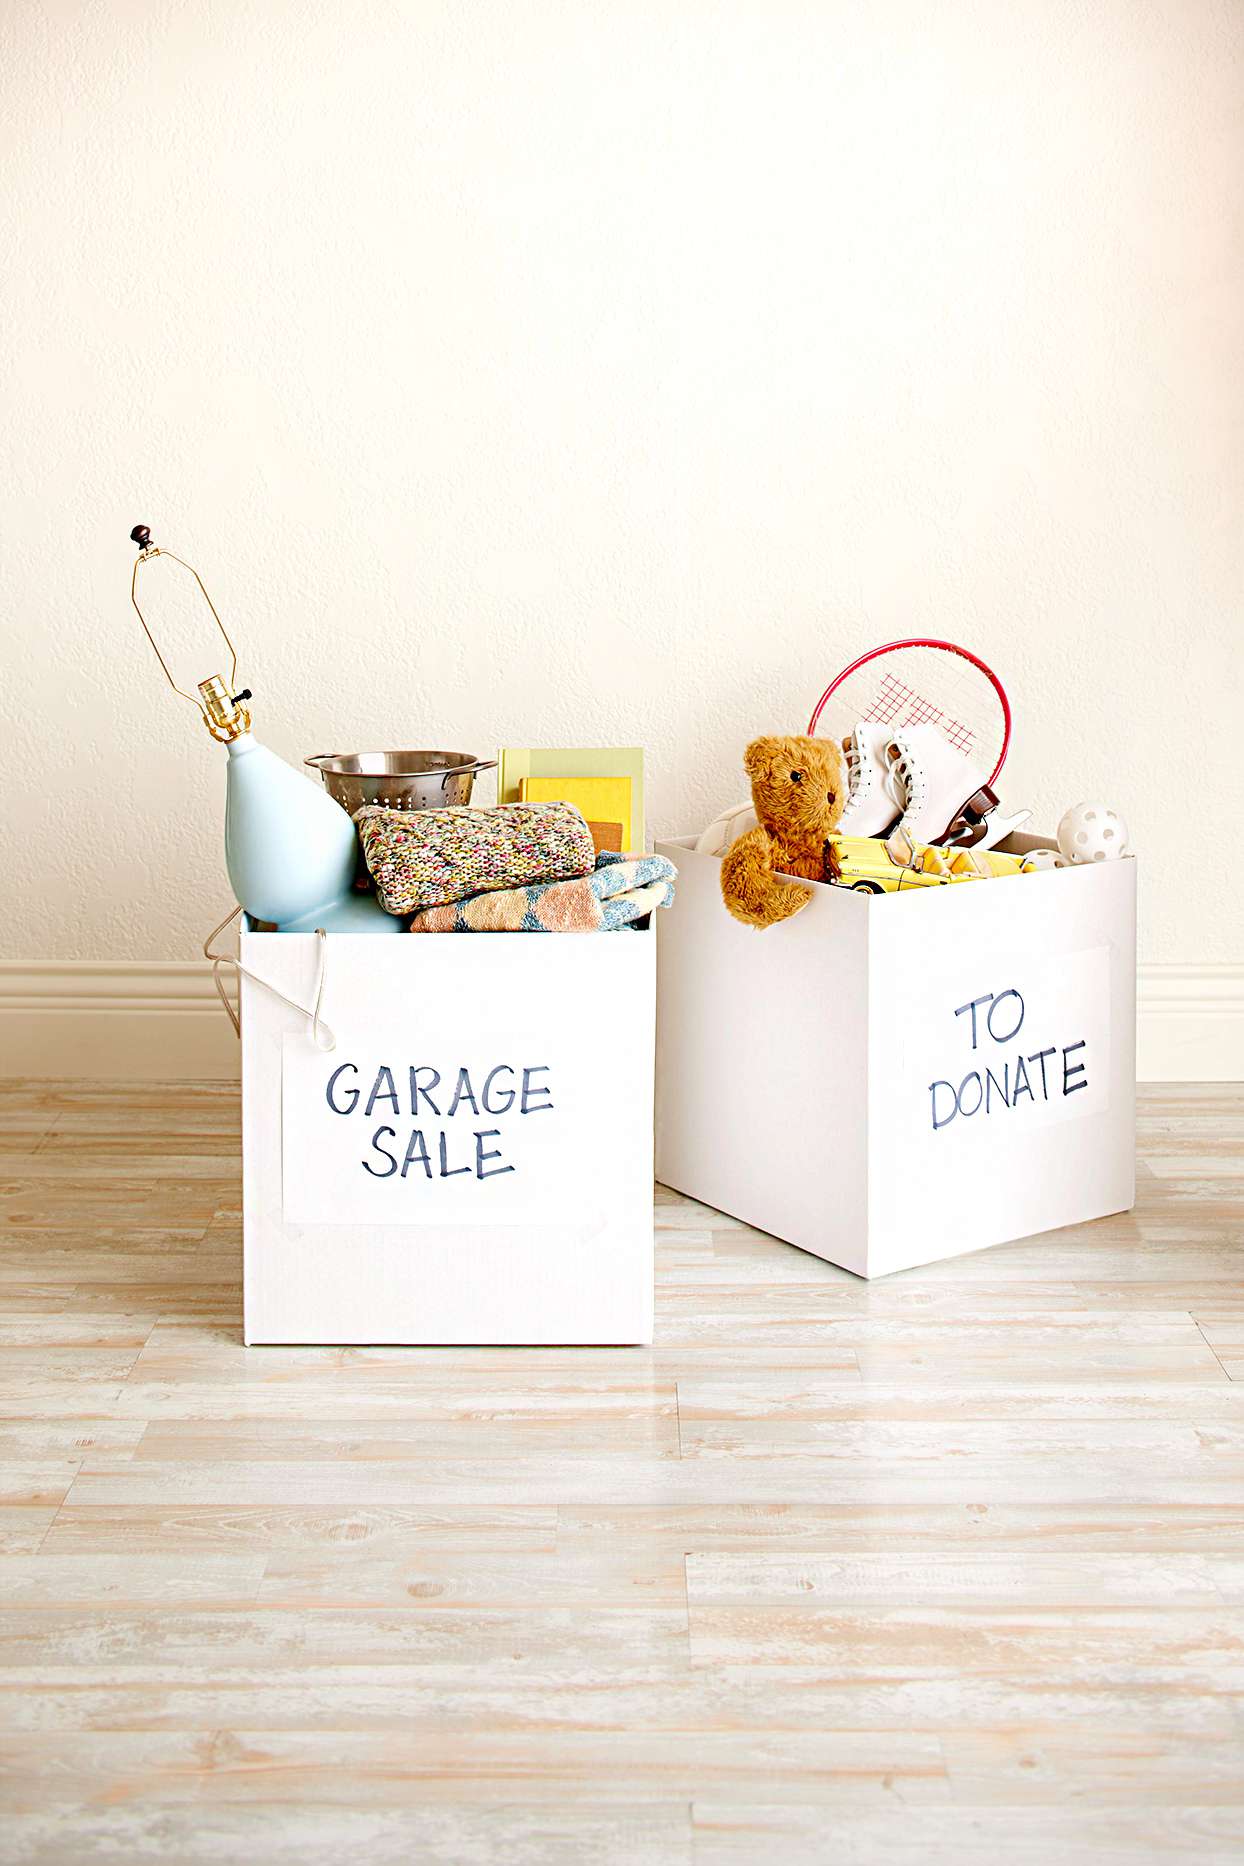 Designate a Donation Box